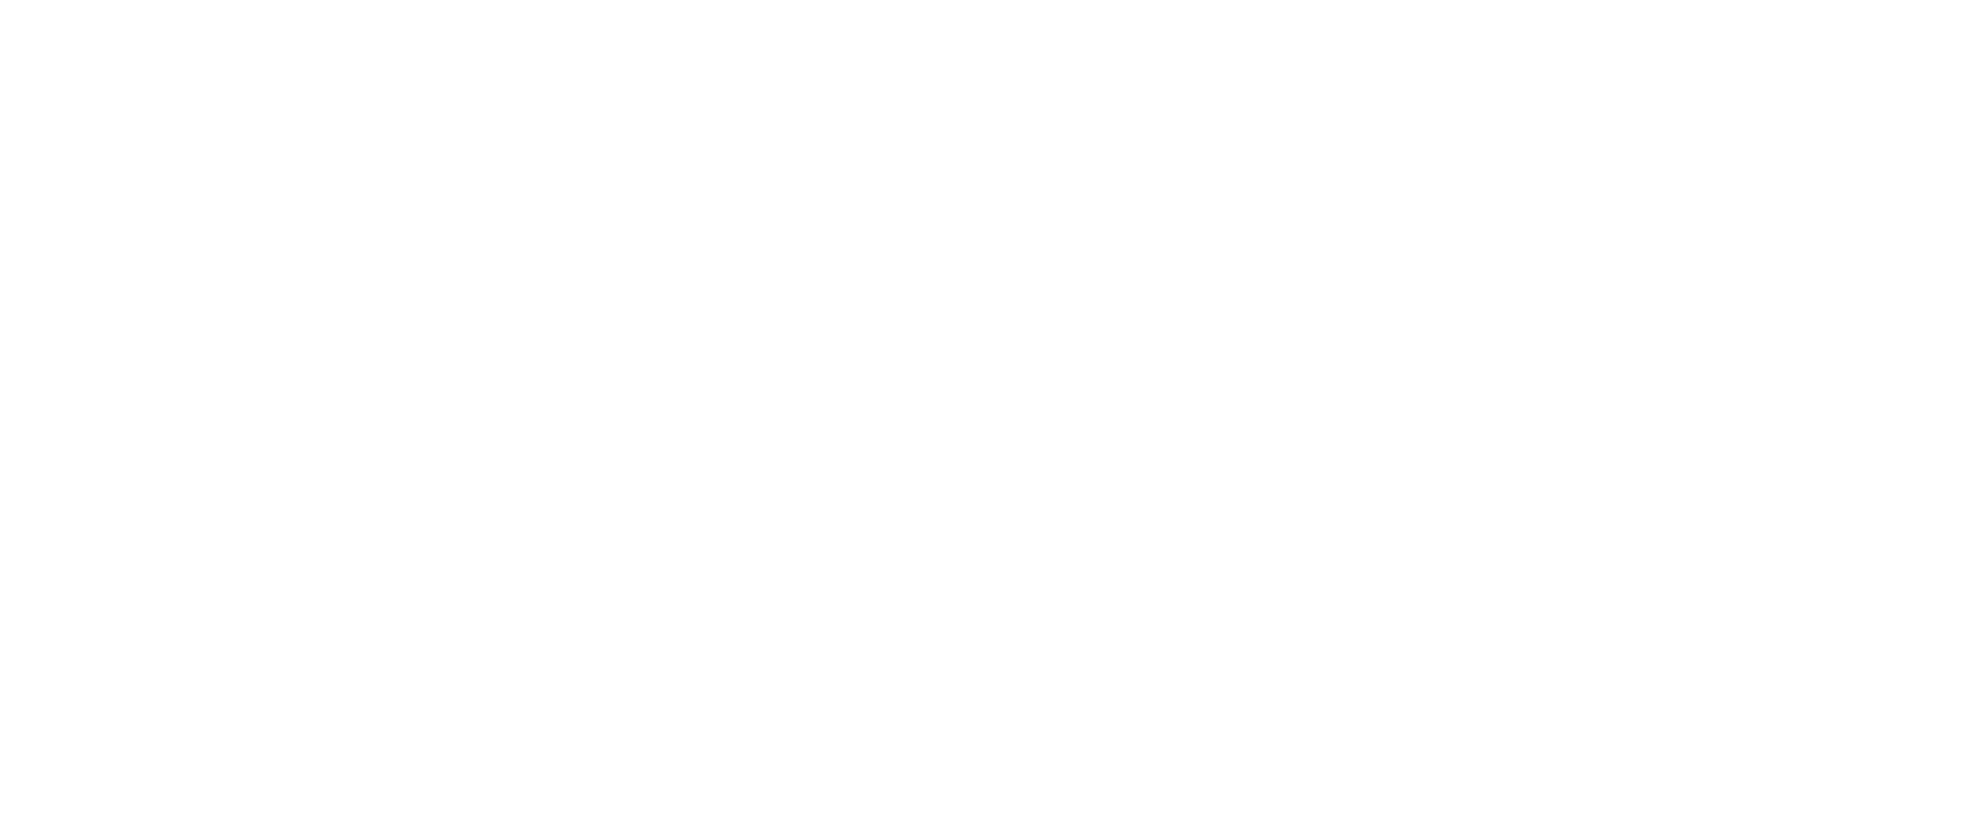 The Alongside Wildlife Foundation